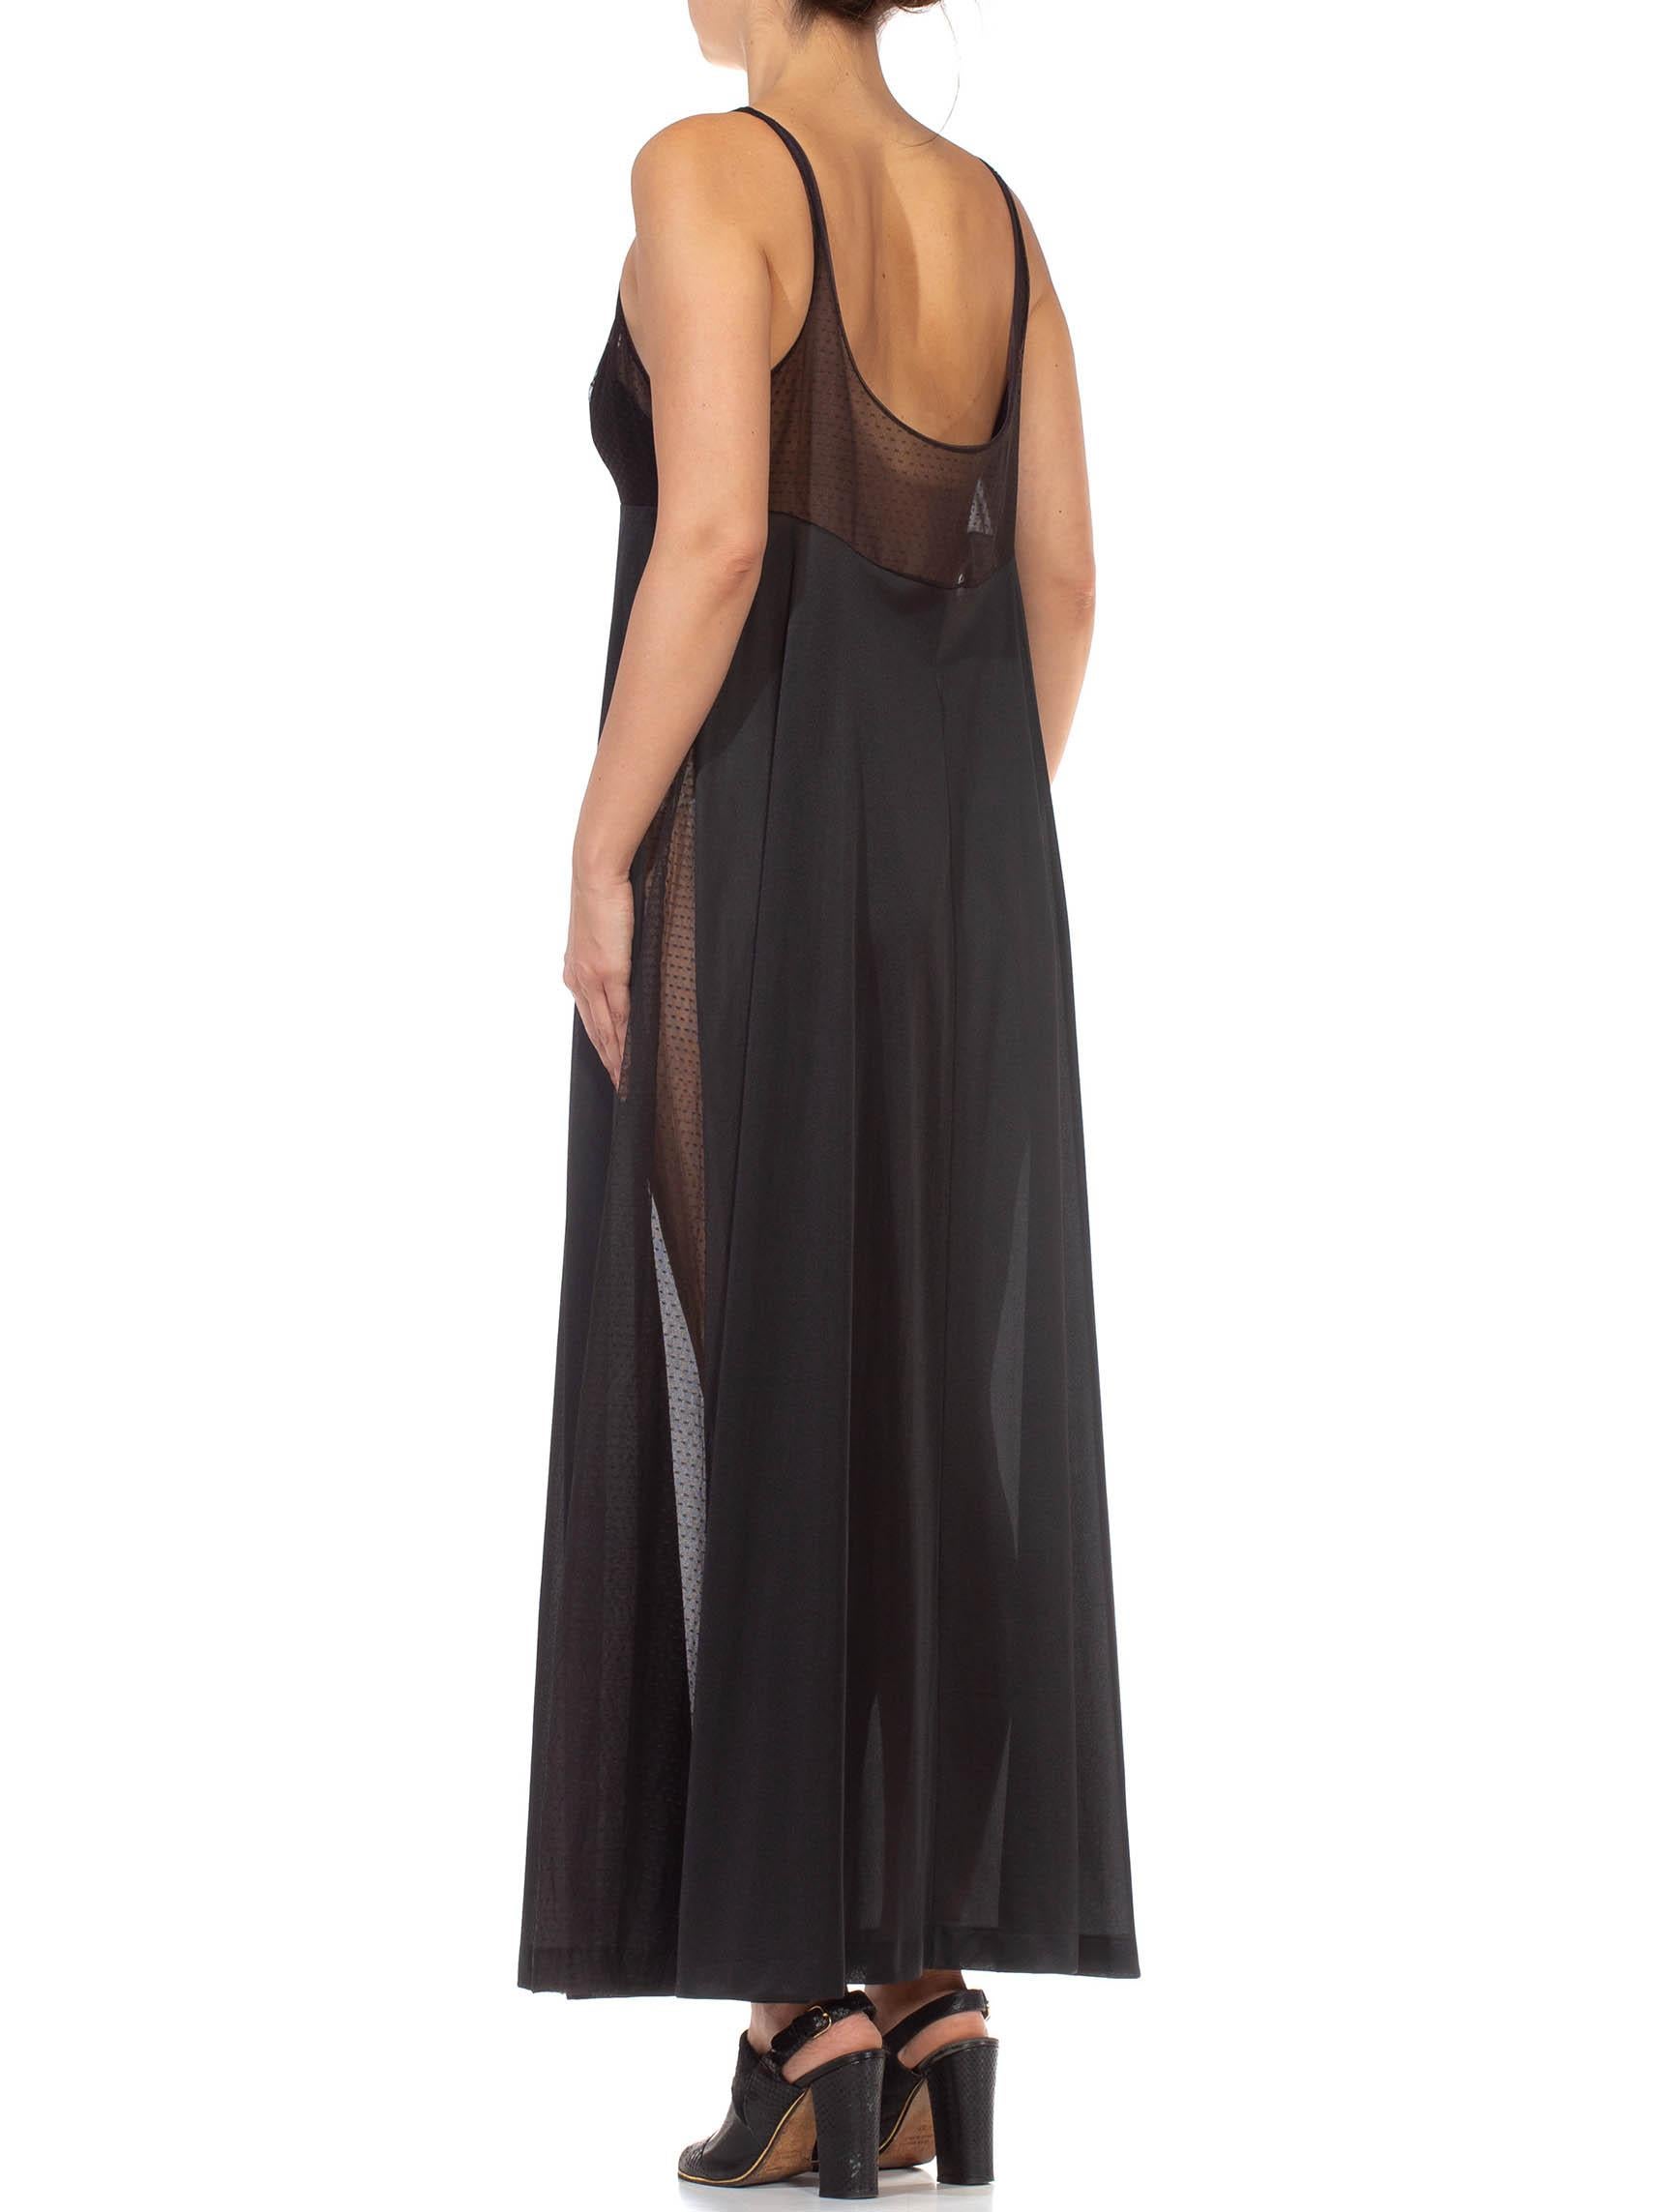 1970S Black Sheer Mesh Bodice Nylon Negligee Slip Dress For Sale 7